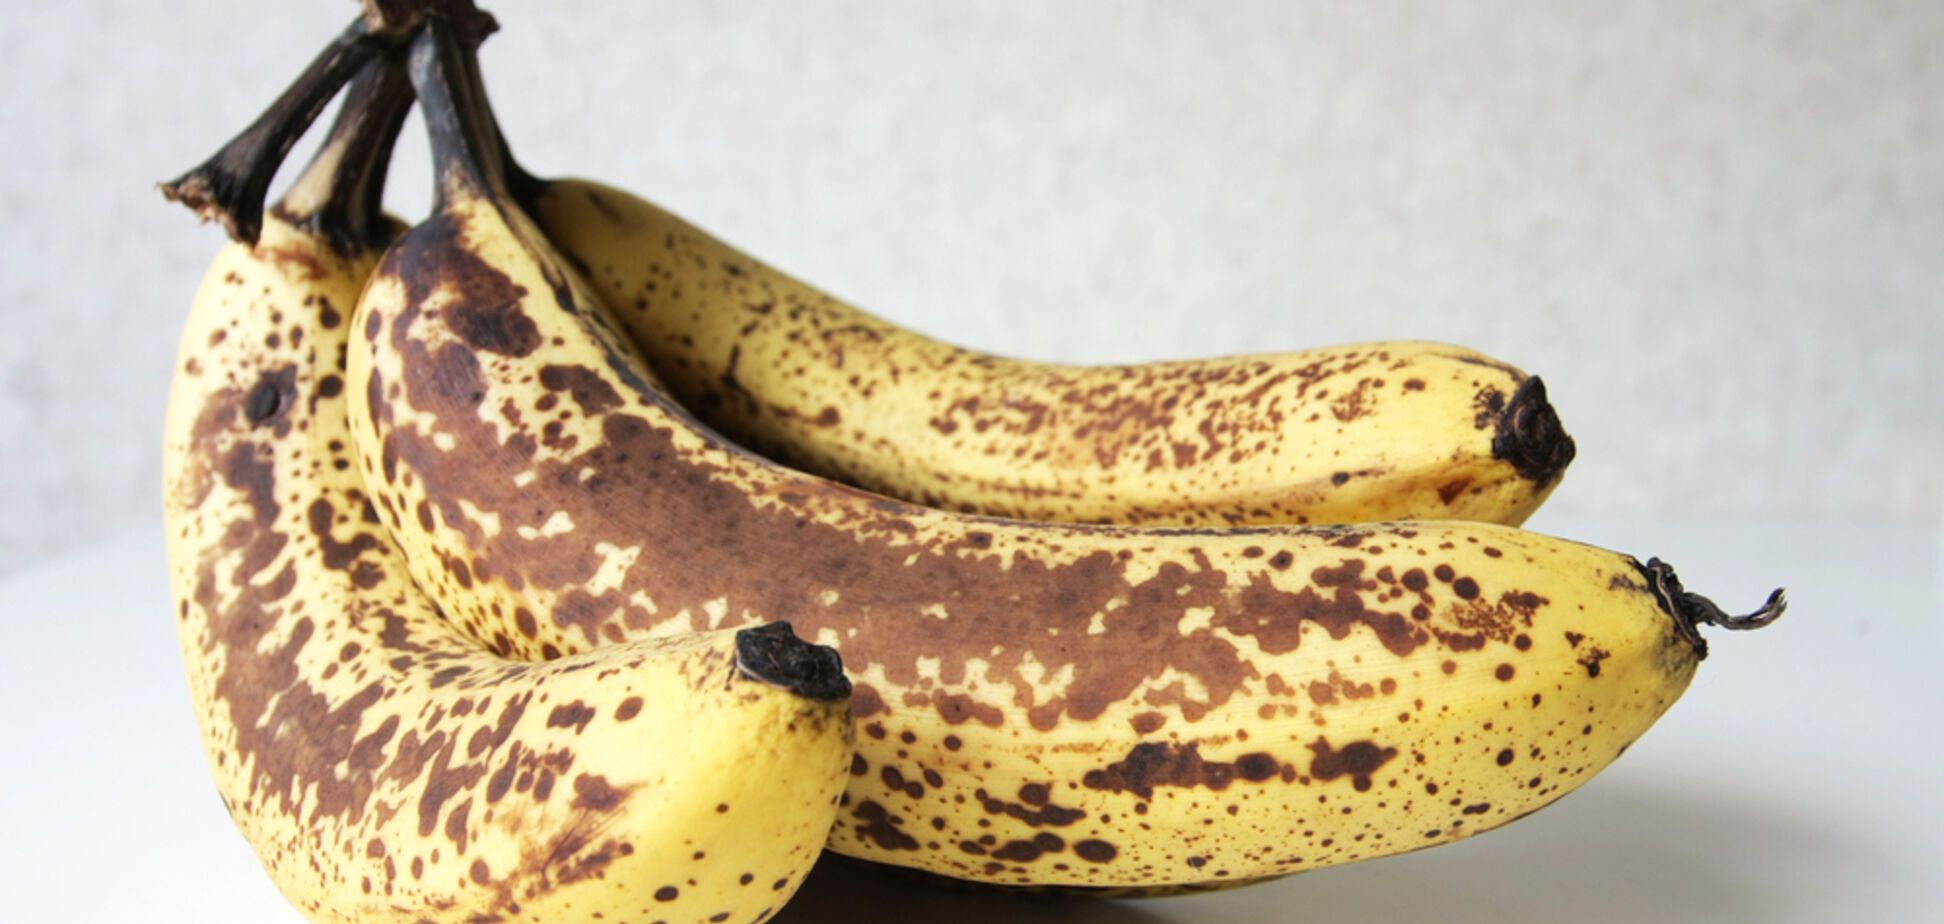 Недопитый чай и переспевшие бананы: как использовать просроченные продукты 